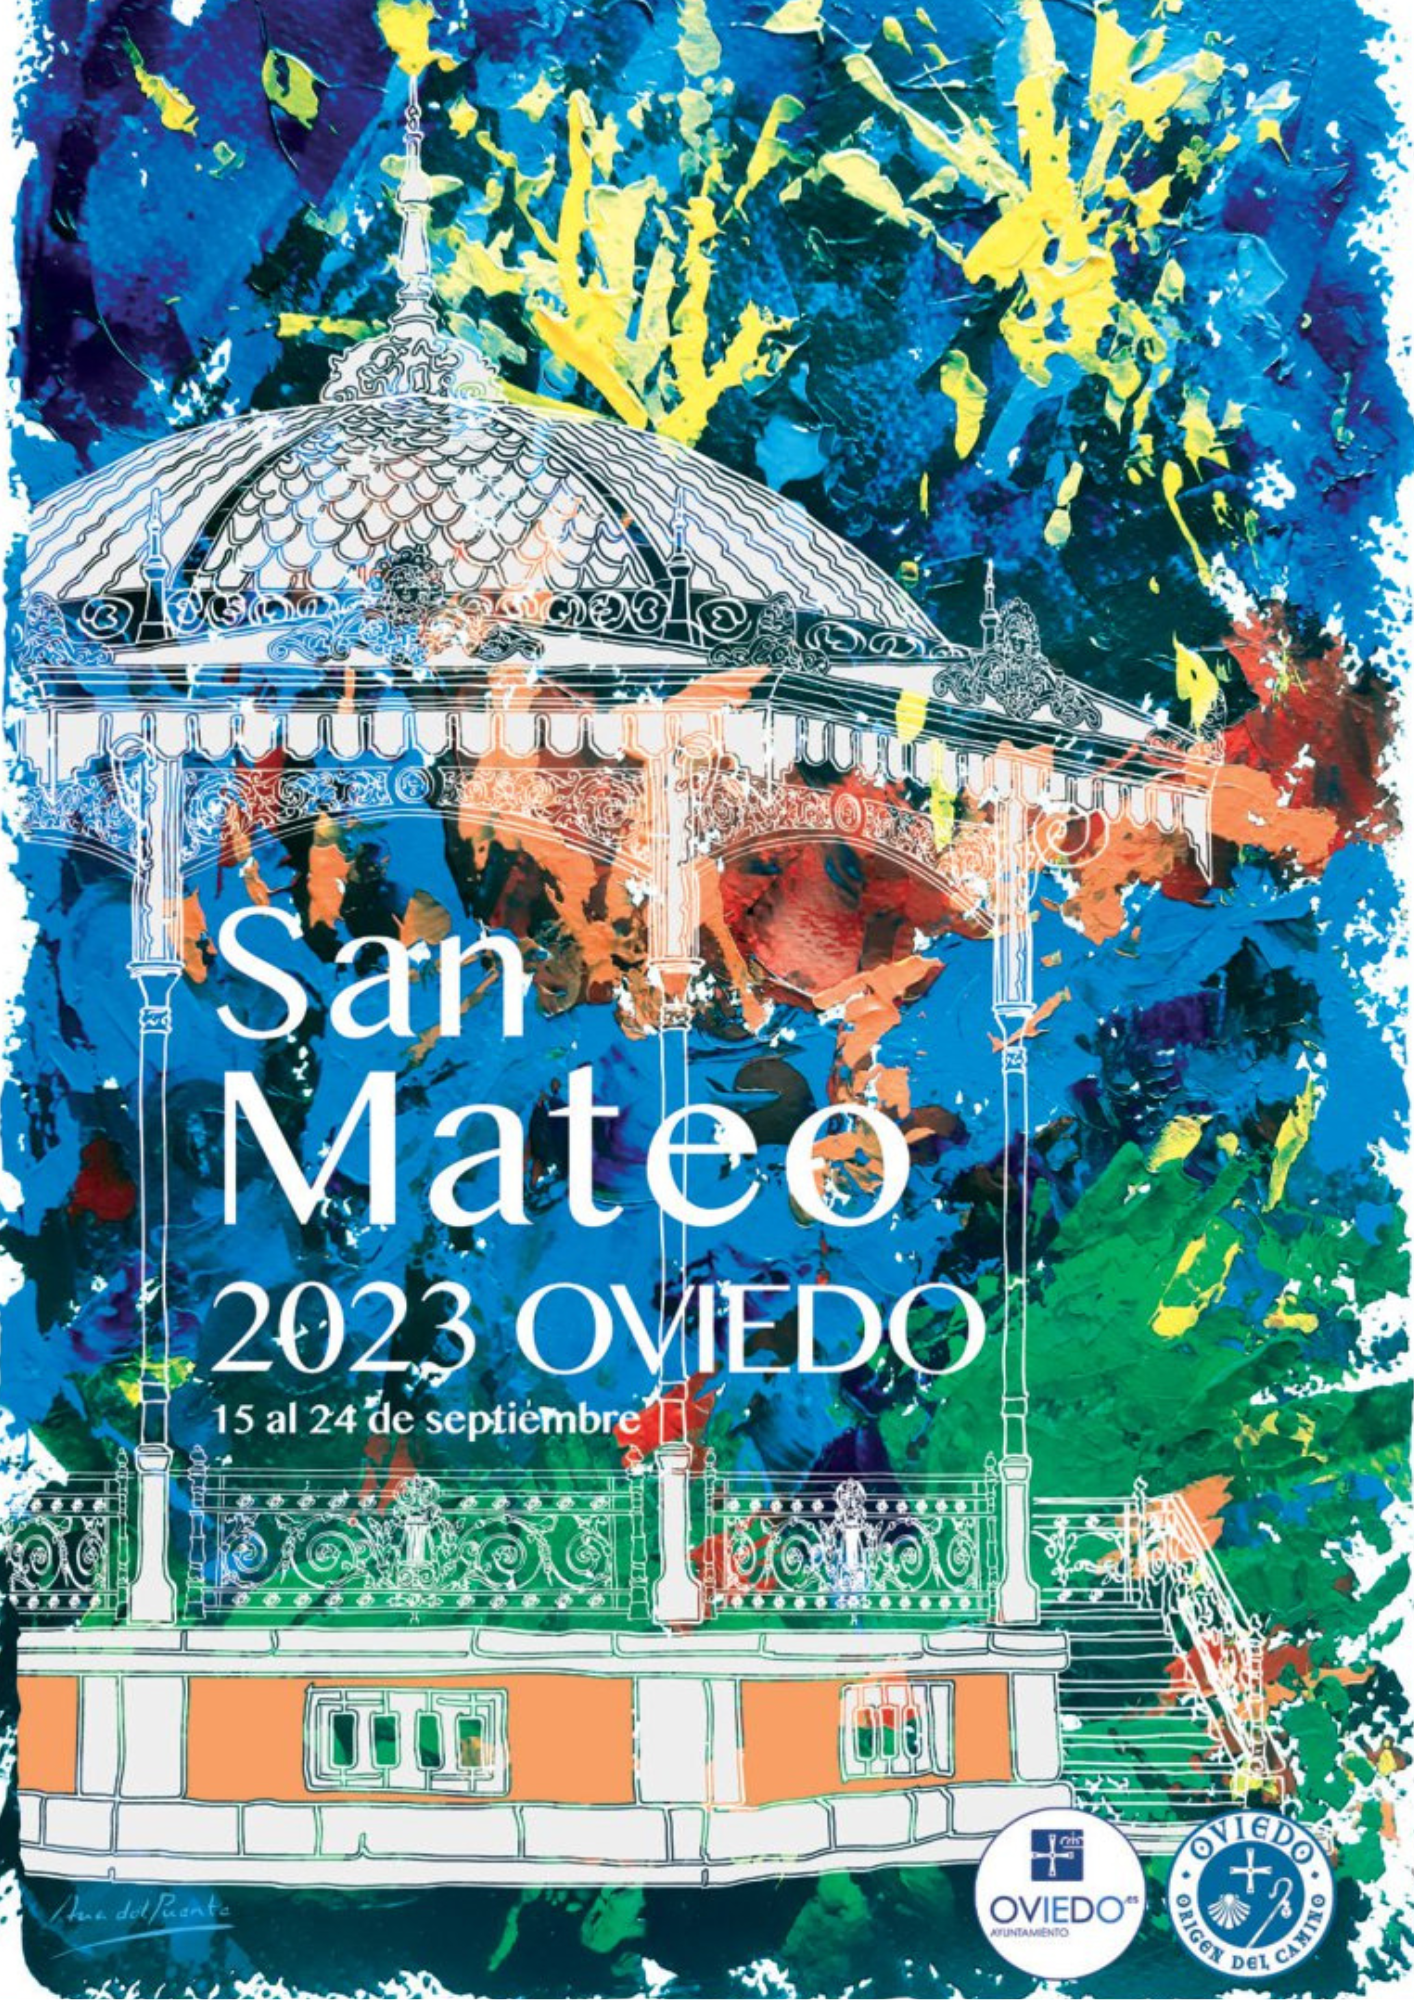 Cuentos de Maleta en San Mateo 2023